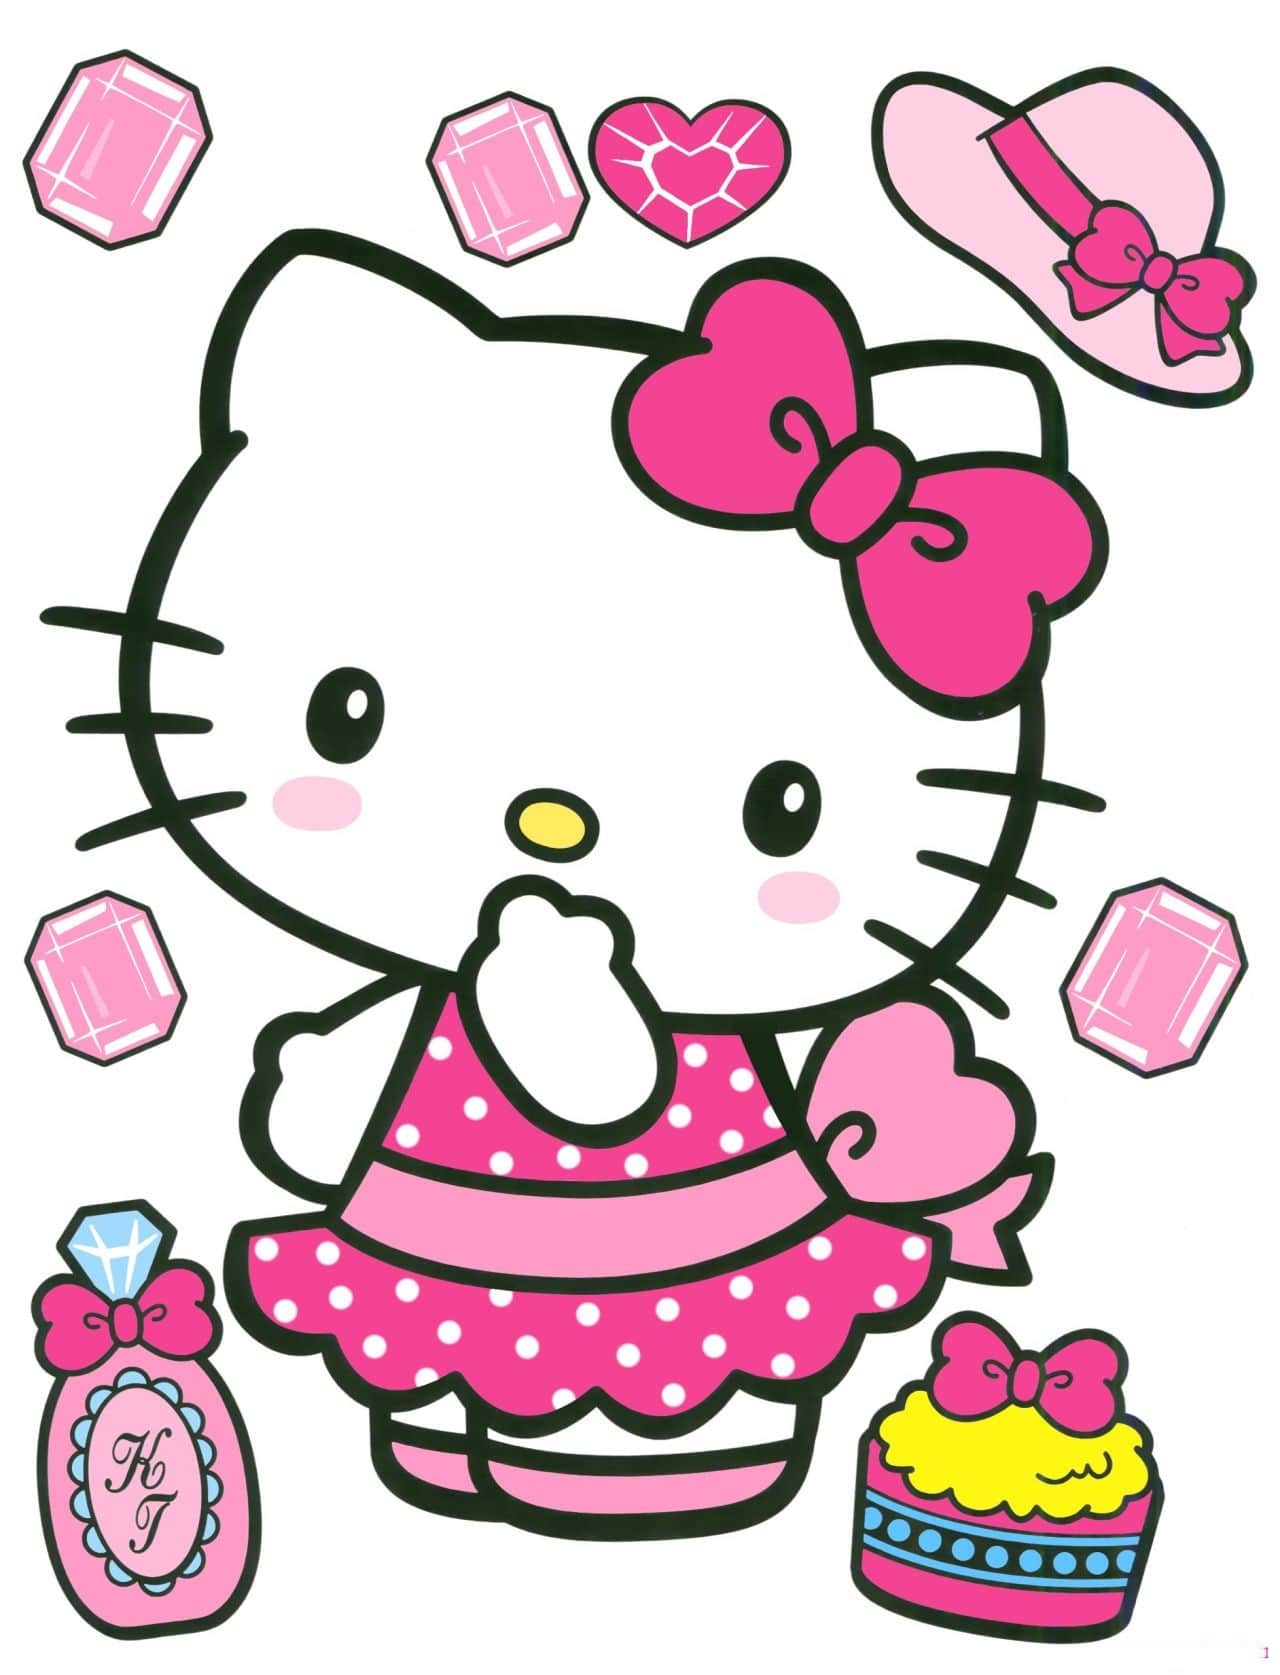 Hello Kitty Đẹp Xinh Cute: Chắc chắn rằng chú mèo Hello Kitty xinh đẹp và dễ thương sẽ khiến bạn yêu thích ngay từ những lần đầu tiên ngắm nhìn. Hãy để mình hòa mình vào thế giới của Kitty để tận hưởng những giây phút thư giãn và ngắm nhìn nét đẹp độc đáo của cô nàng này.